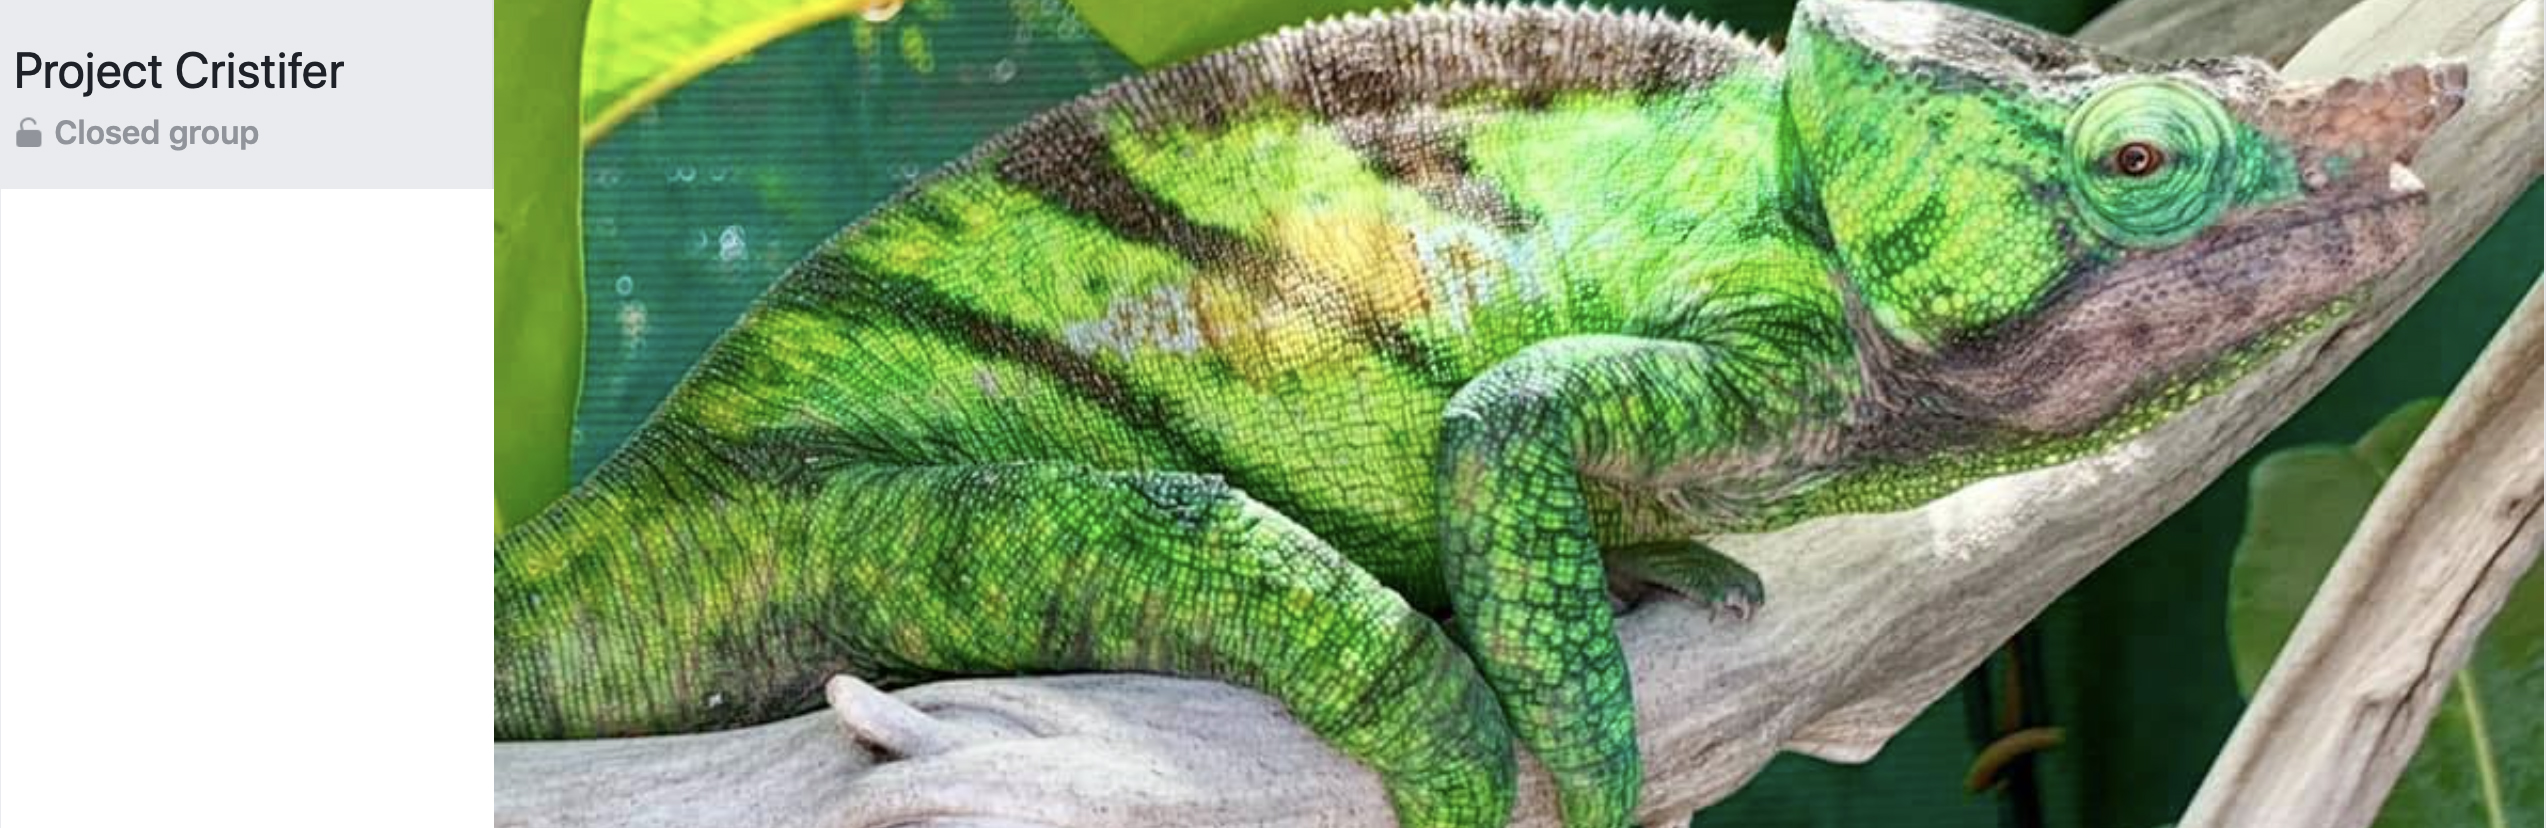 Parsons cristifer chameleon Facebook group